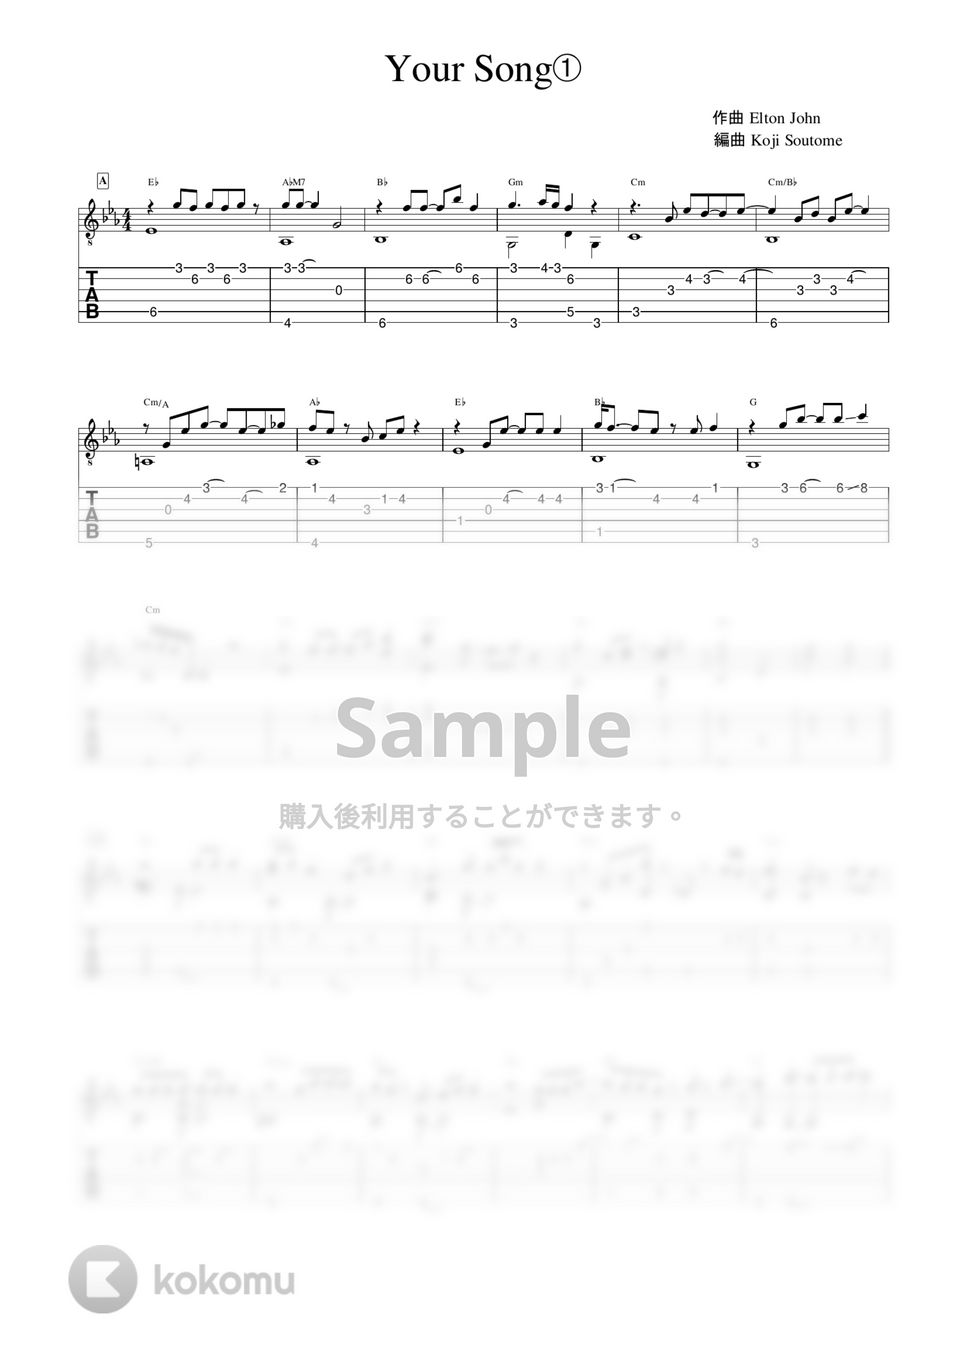 エルトン・ジョン - Your Song (ソロギターアレンジ) by 早乙女浩司